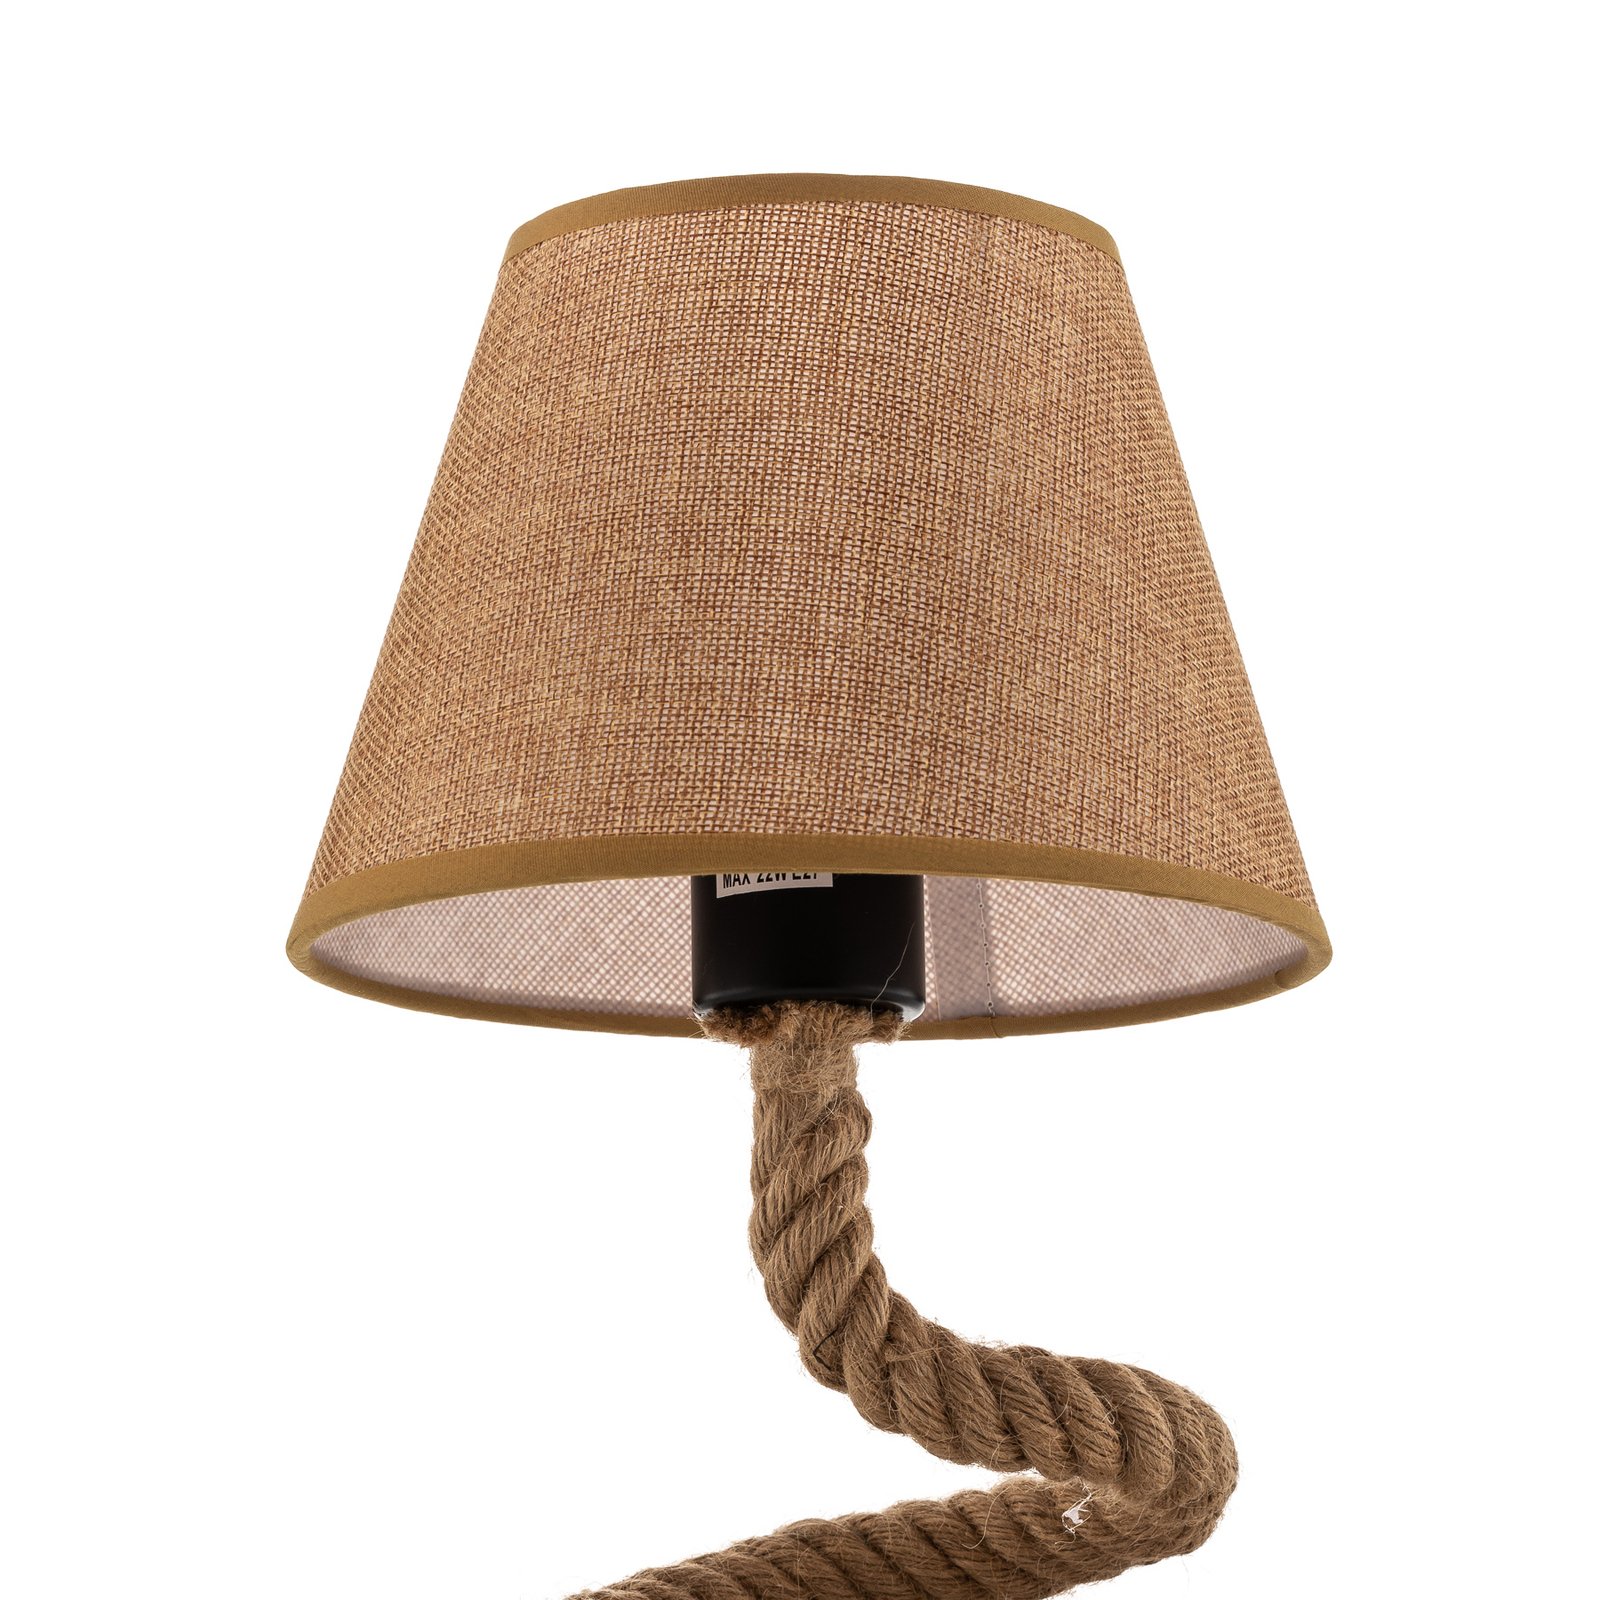 Mauli asztali lámpa kötélből és szövetből készült